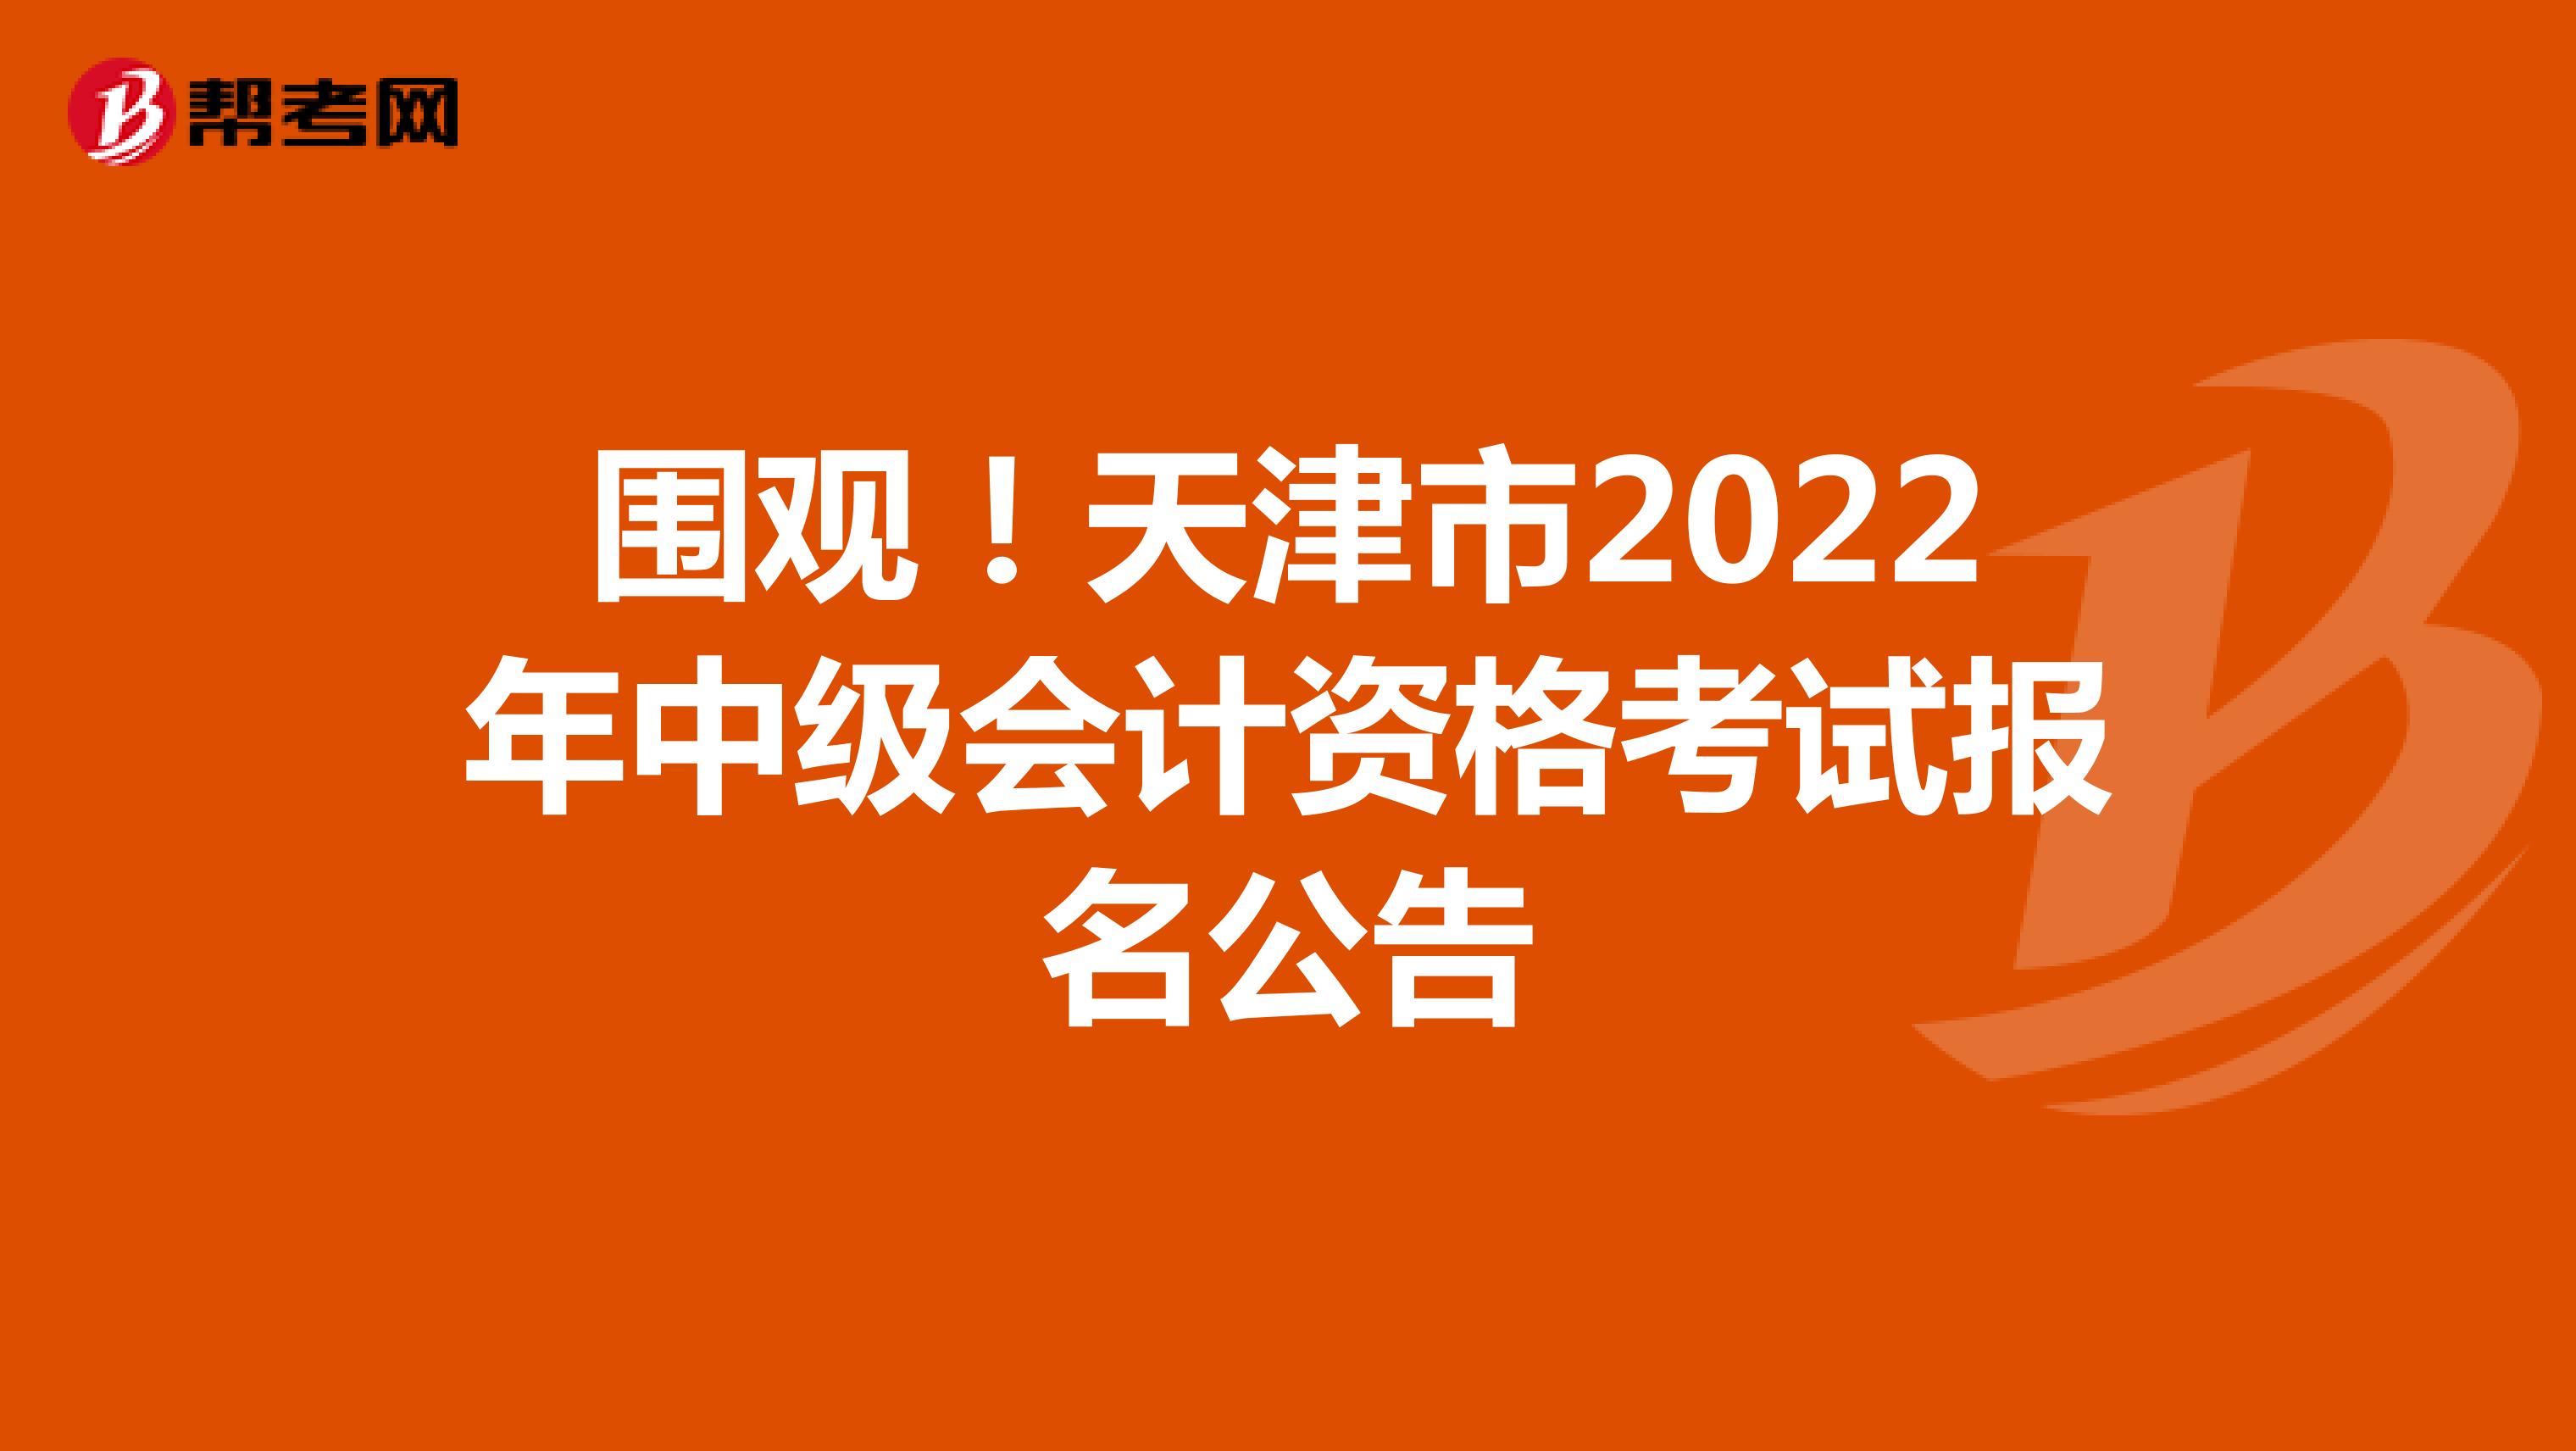 圍觀！天津市2022年中級會計資格考試報名公告